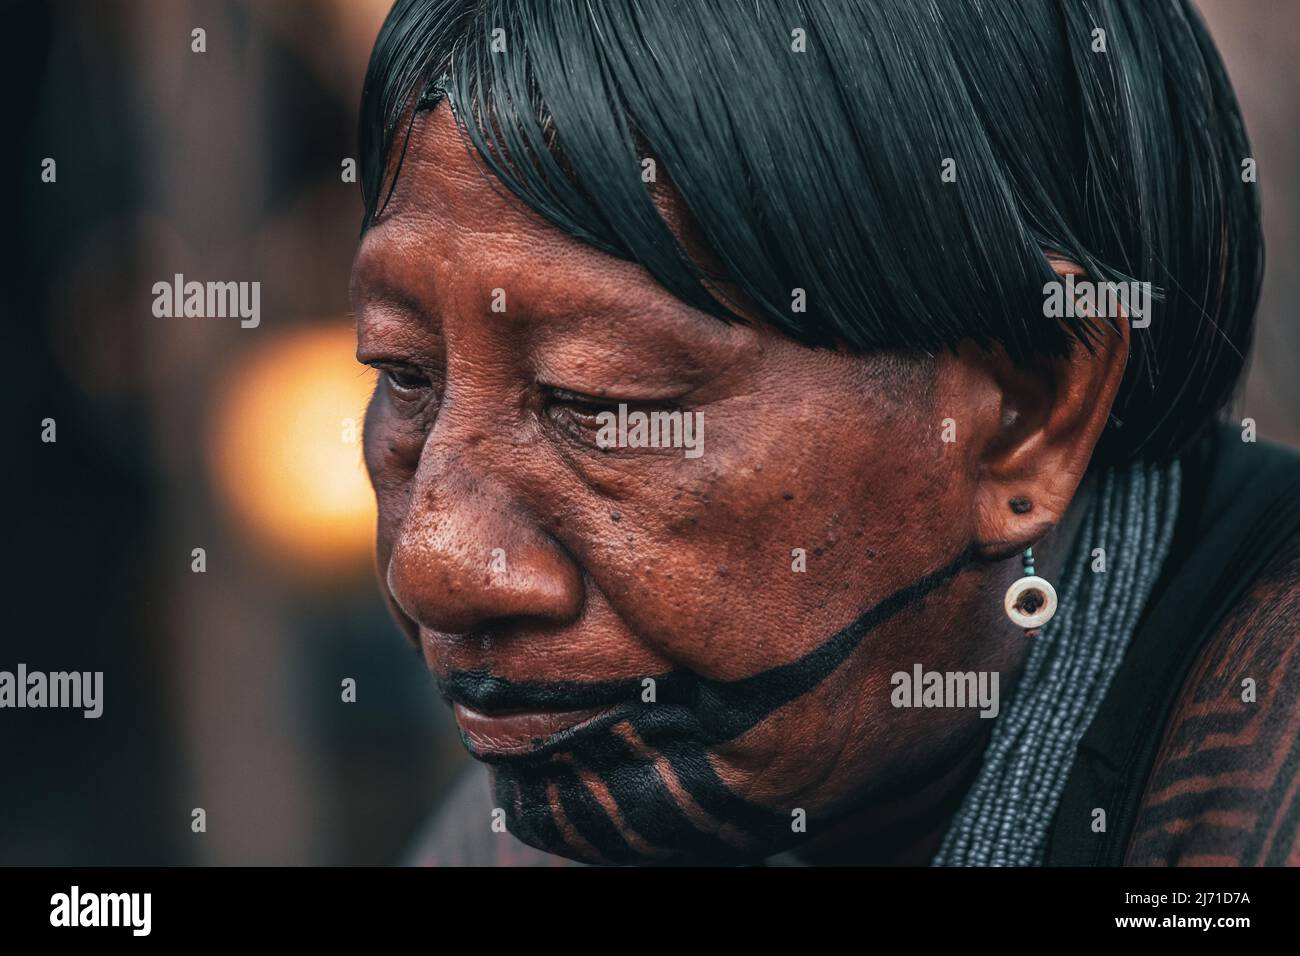 Indigenous woman wearing tribal face paint. Brazilian Amazon, 2010. Stock Photo